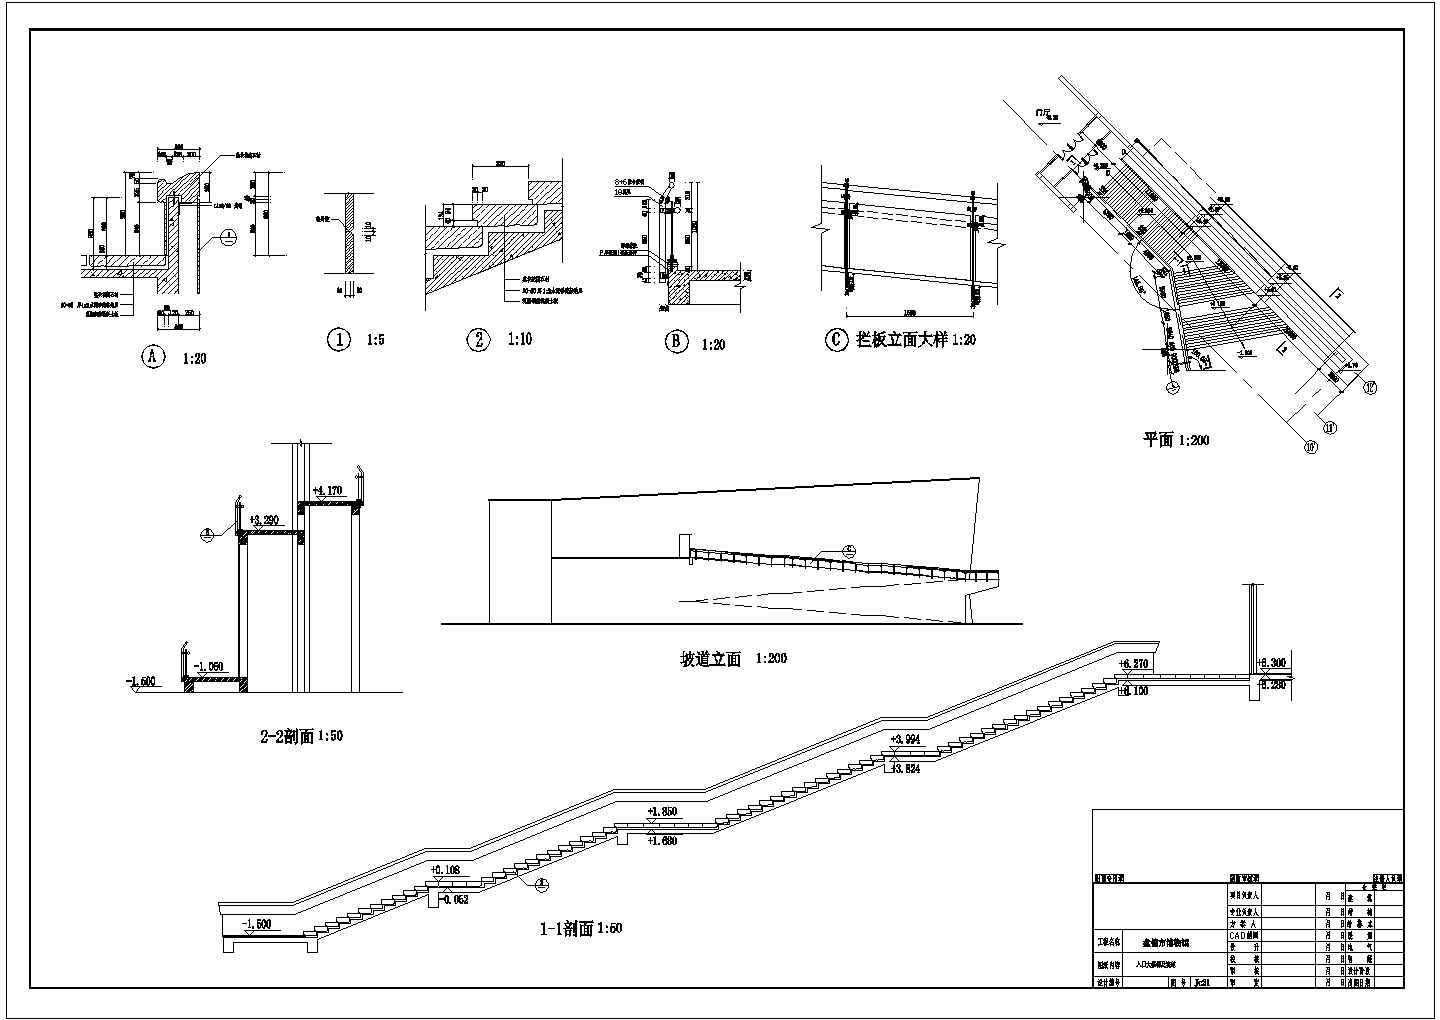 某1894.4平米展览展馆CAD建筑施工图结构施工图入口大楼梯及坡道